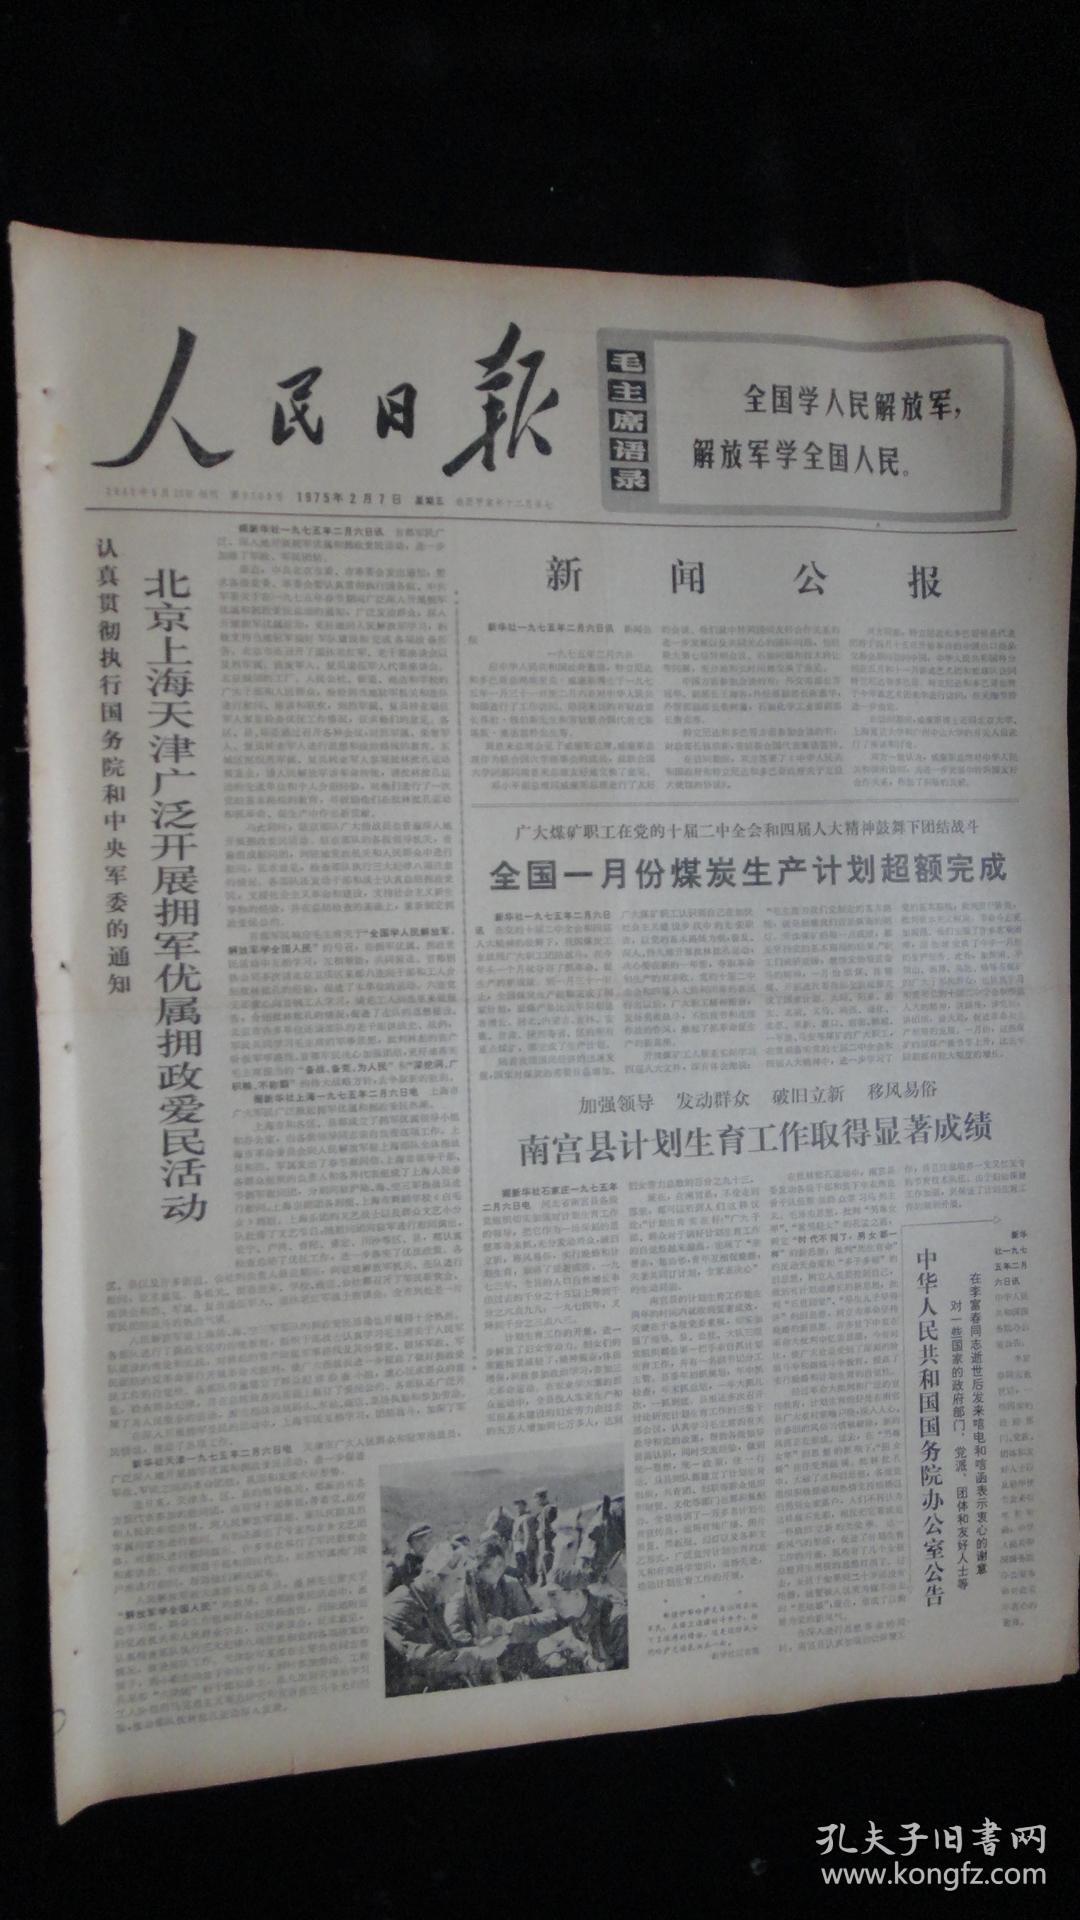 【报纸】人民日报 1975年2月7日【新闻公报】